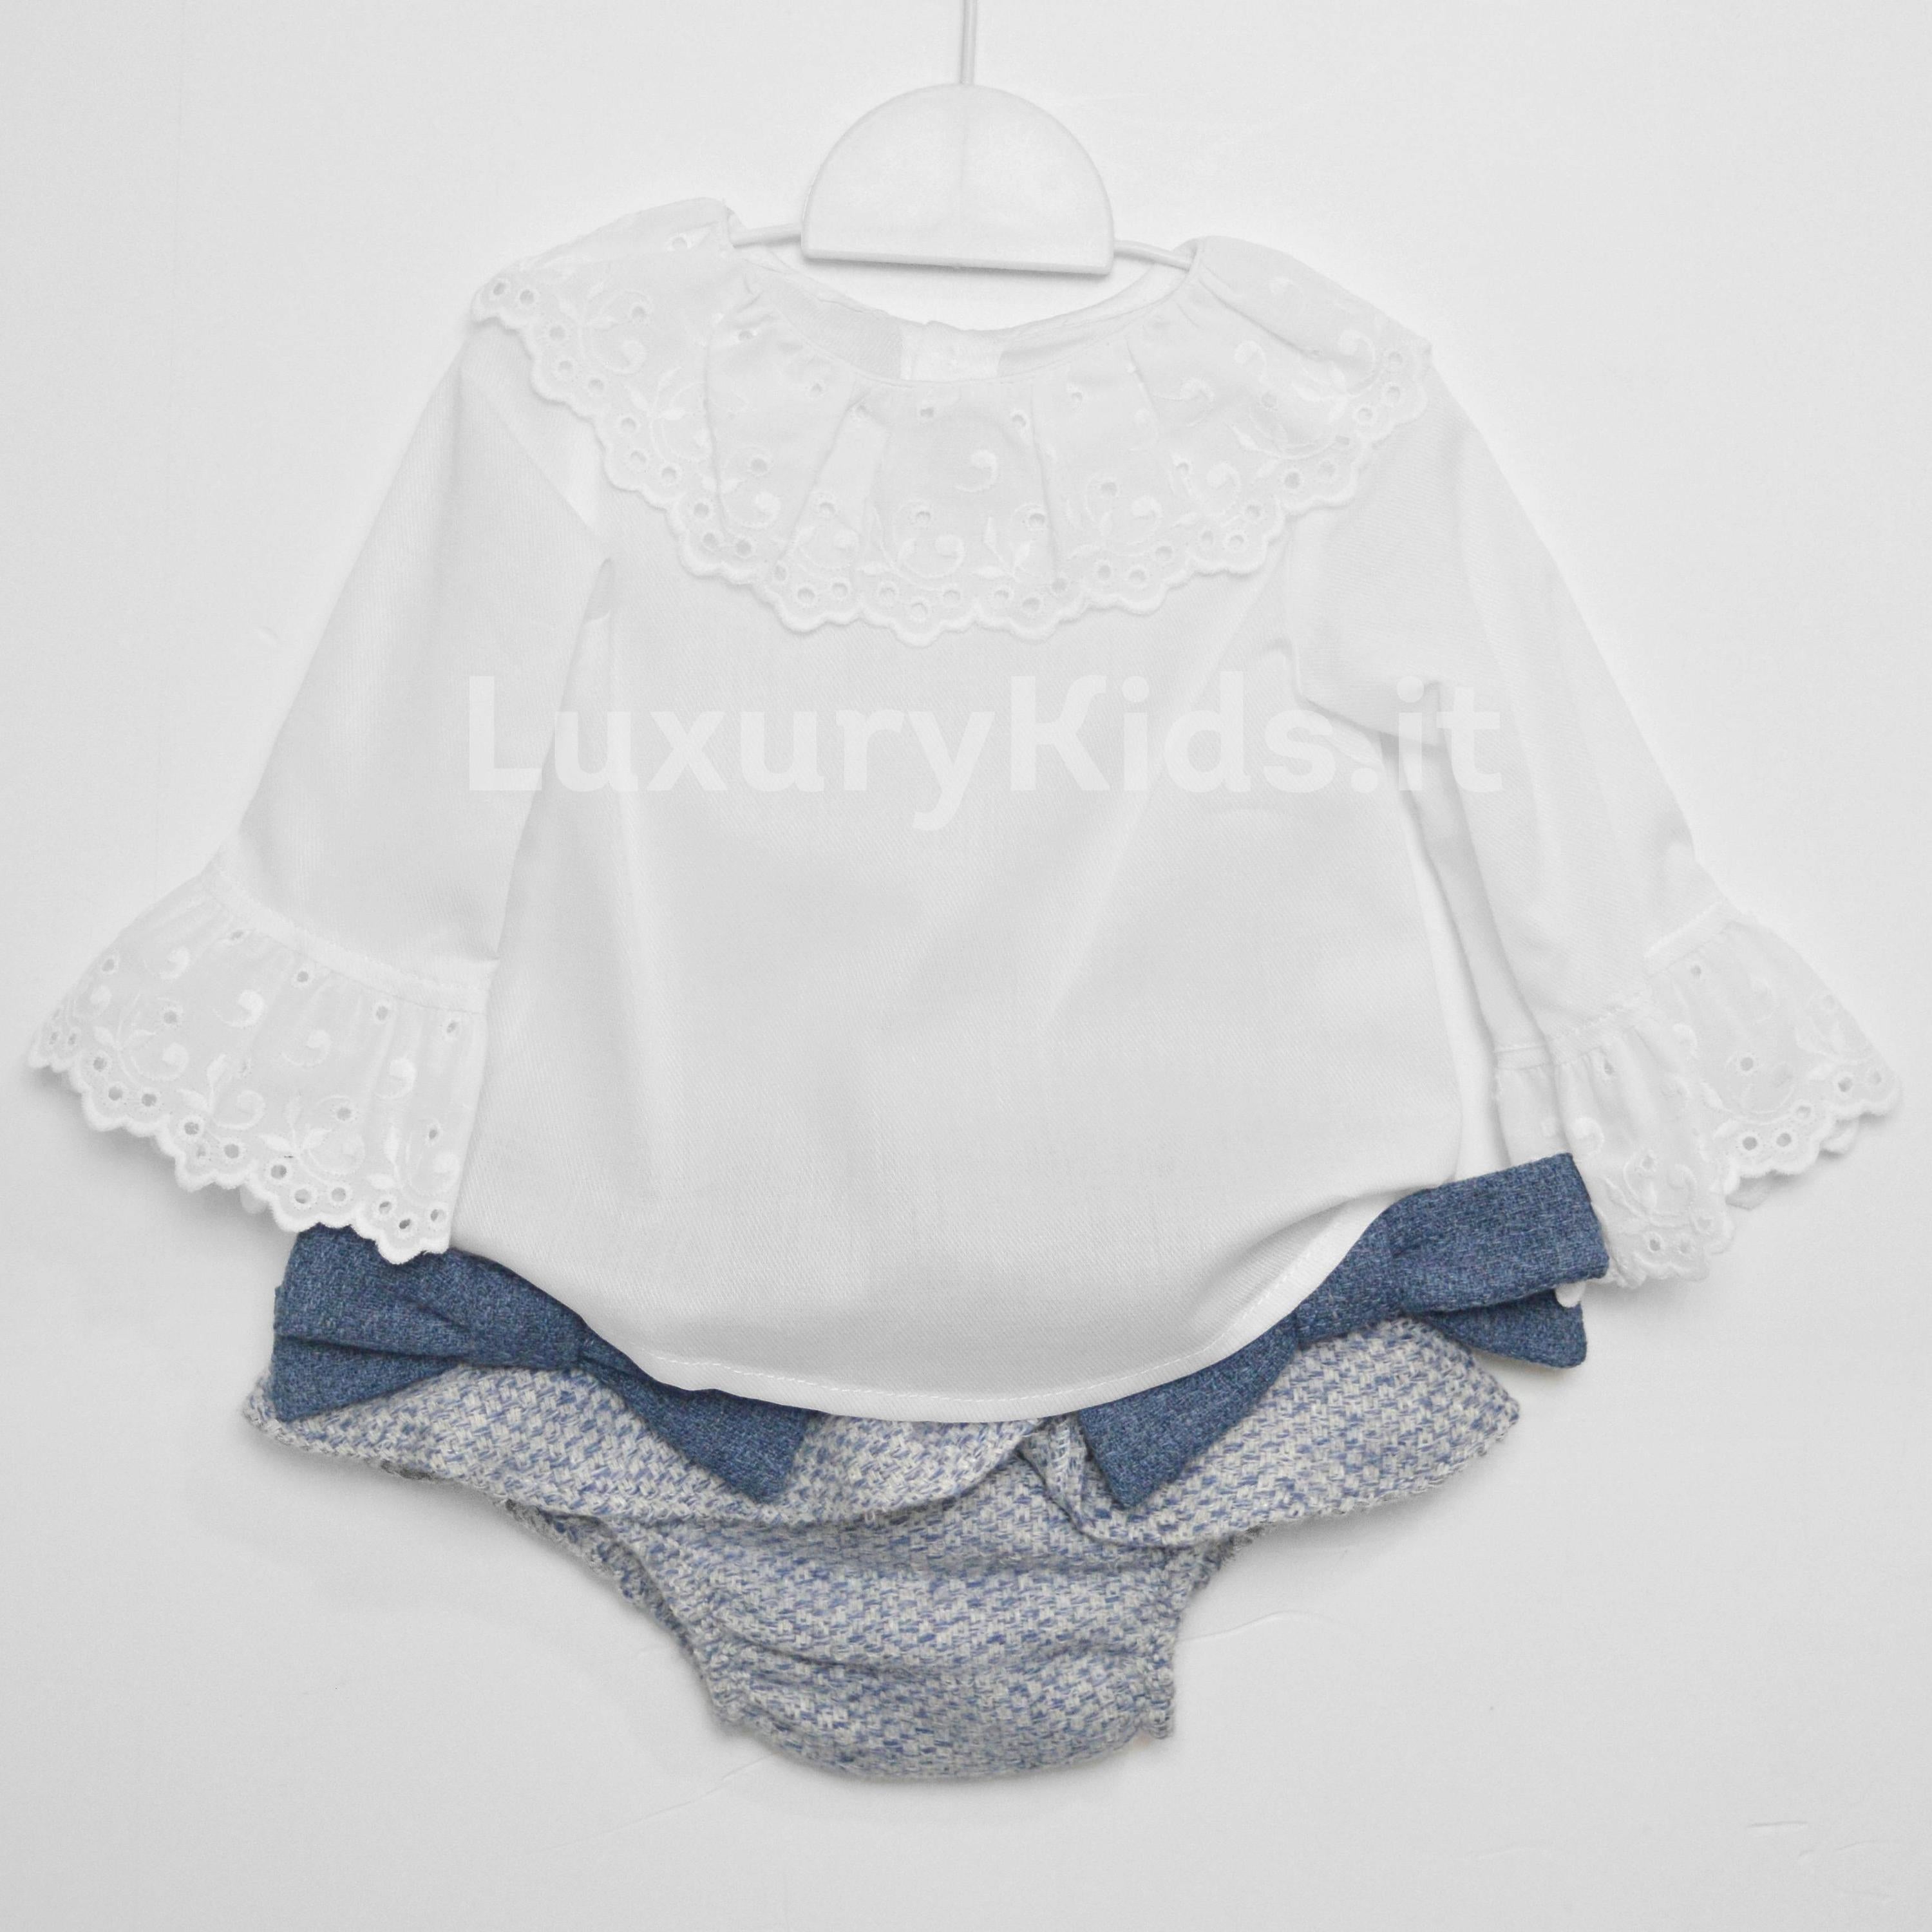 Completo con culotte elegante chic Neonata blu-bianco FINA EJERIQUE O18A6250 - Fina Ejerique - LuxuryKids